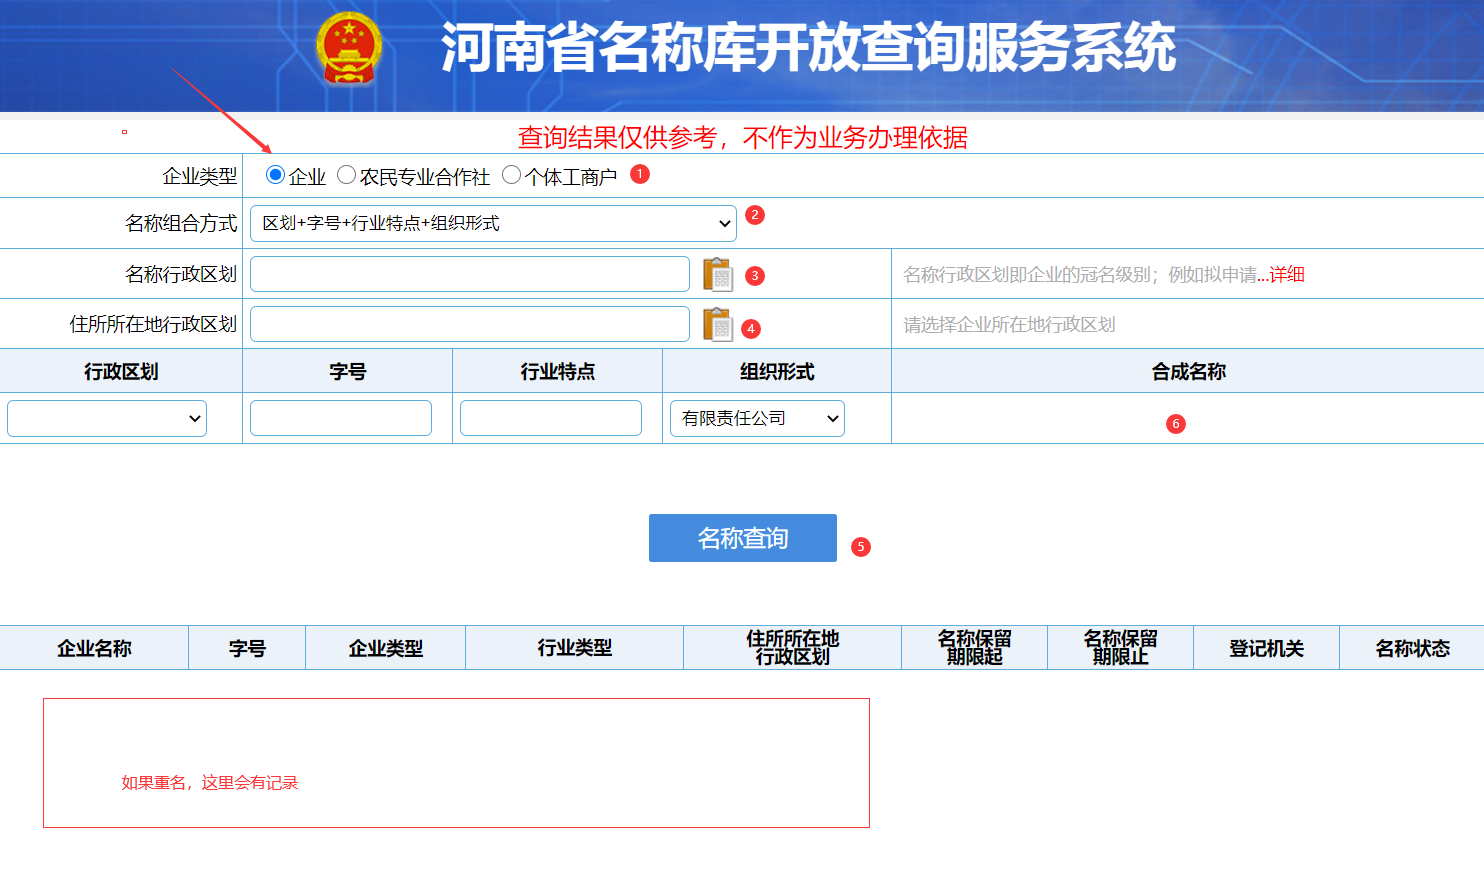 郑州市企业登记核名网址及操作流程